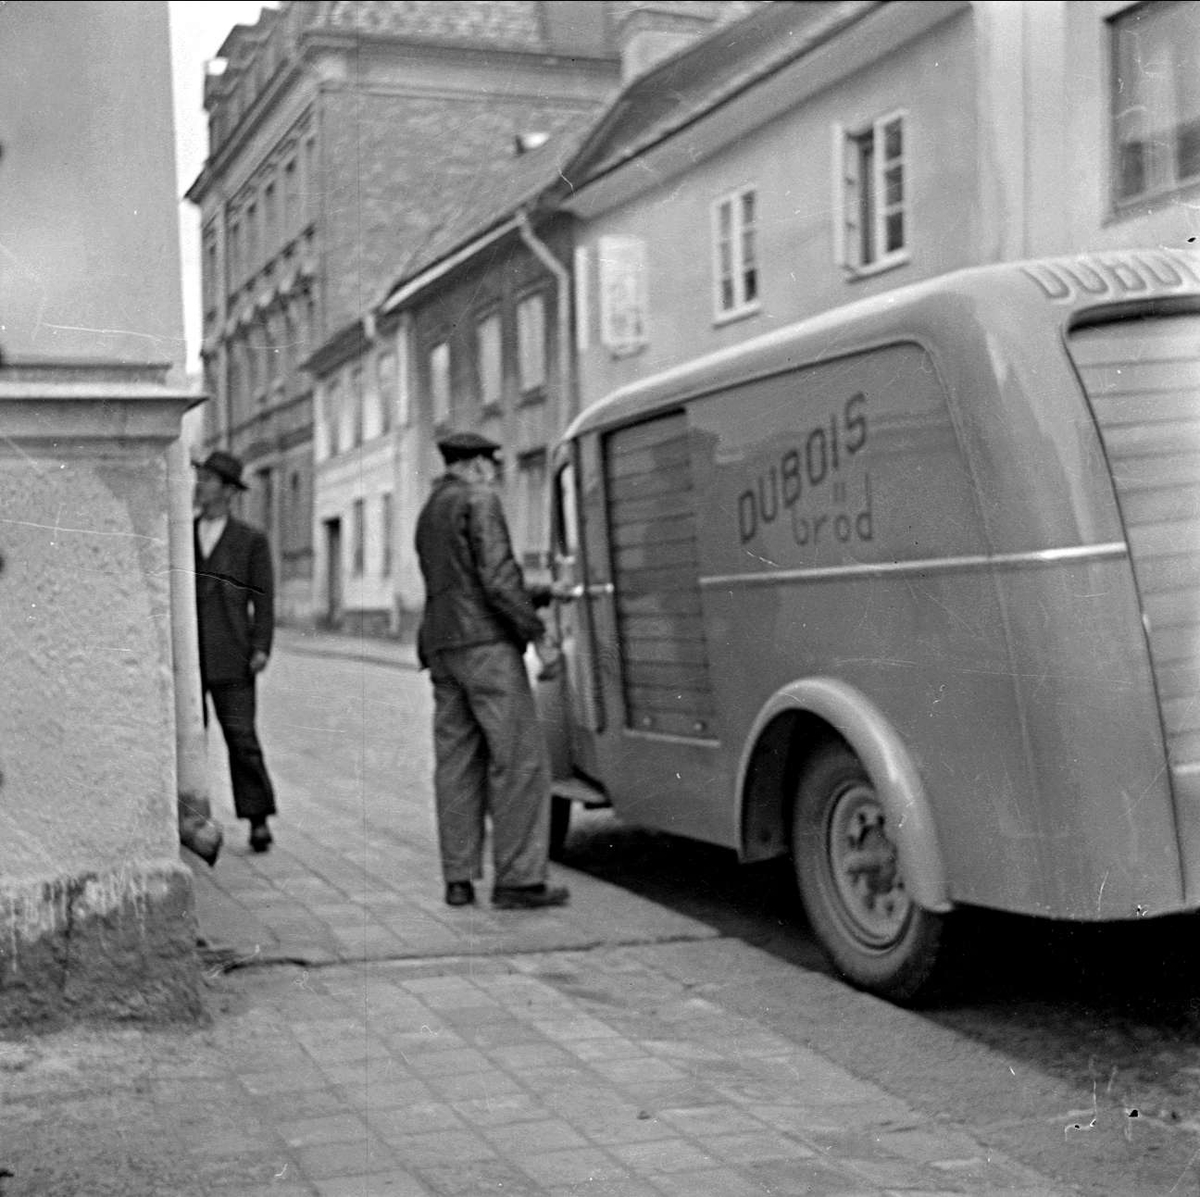 Uppsala över gården I - varubuss från Dubois Bröd, Bredgränd, stadsdelen Dragarbrunn, Uppsala 1949